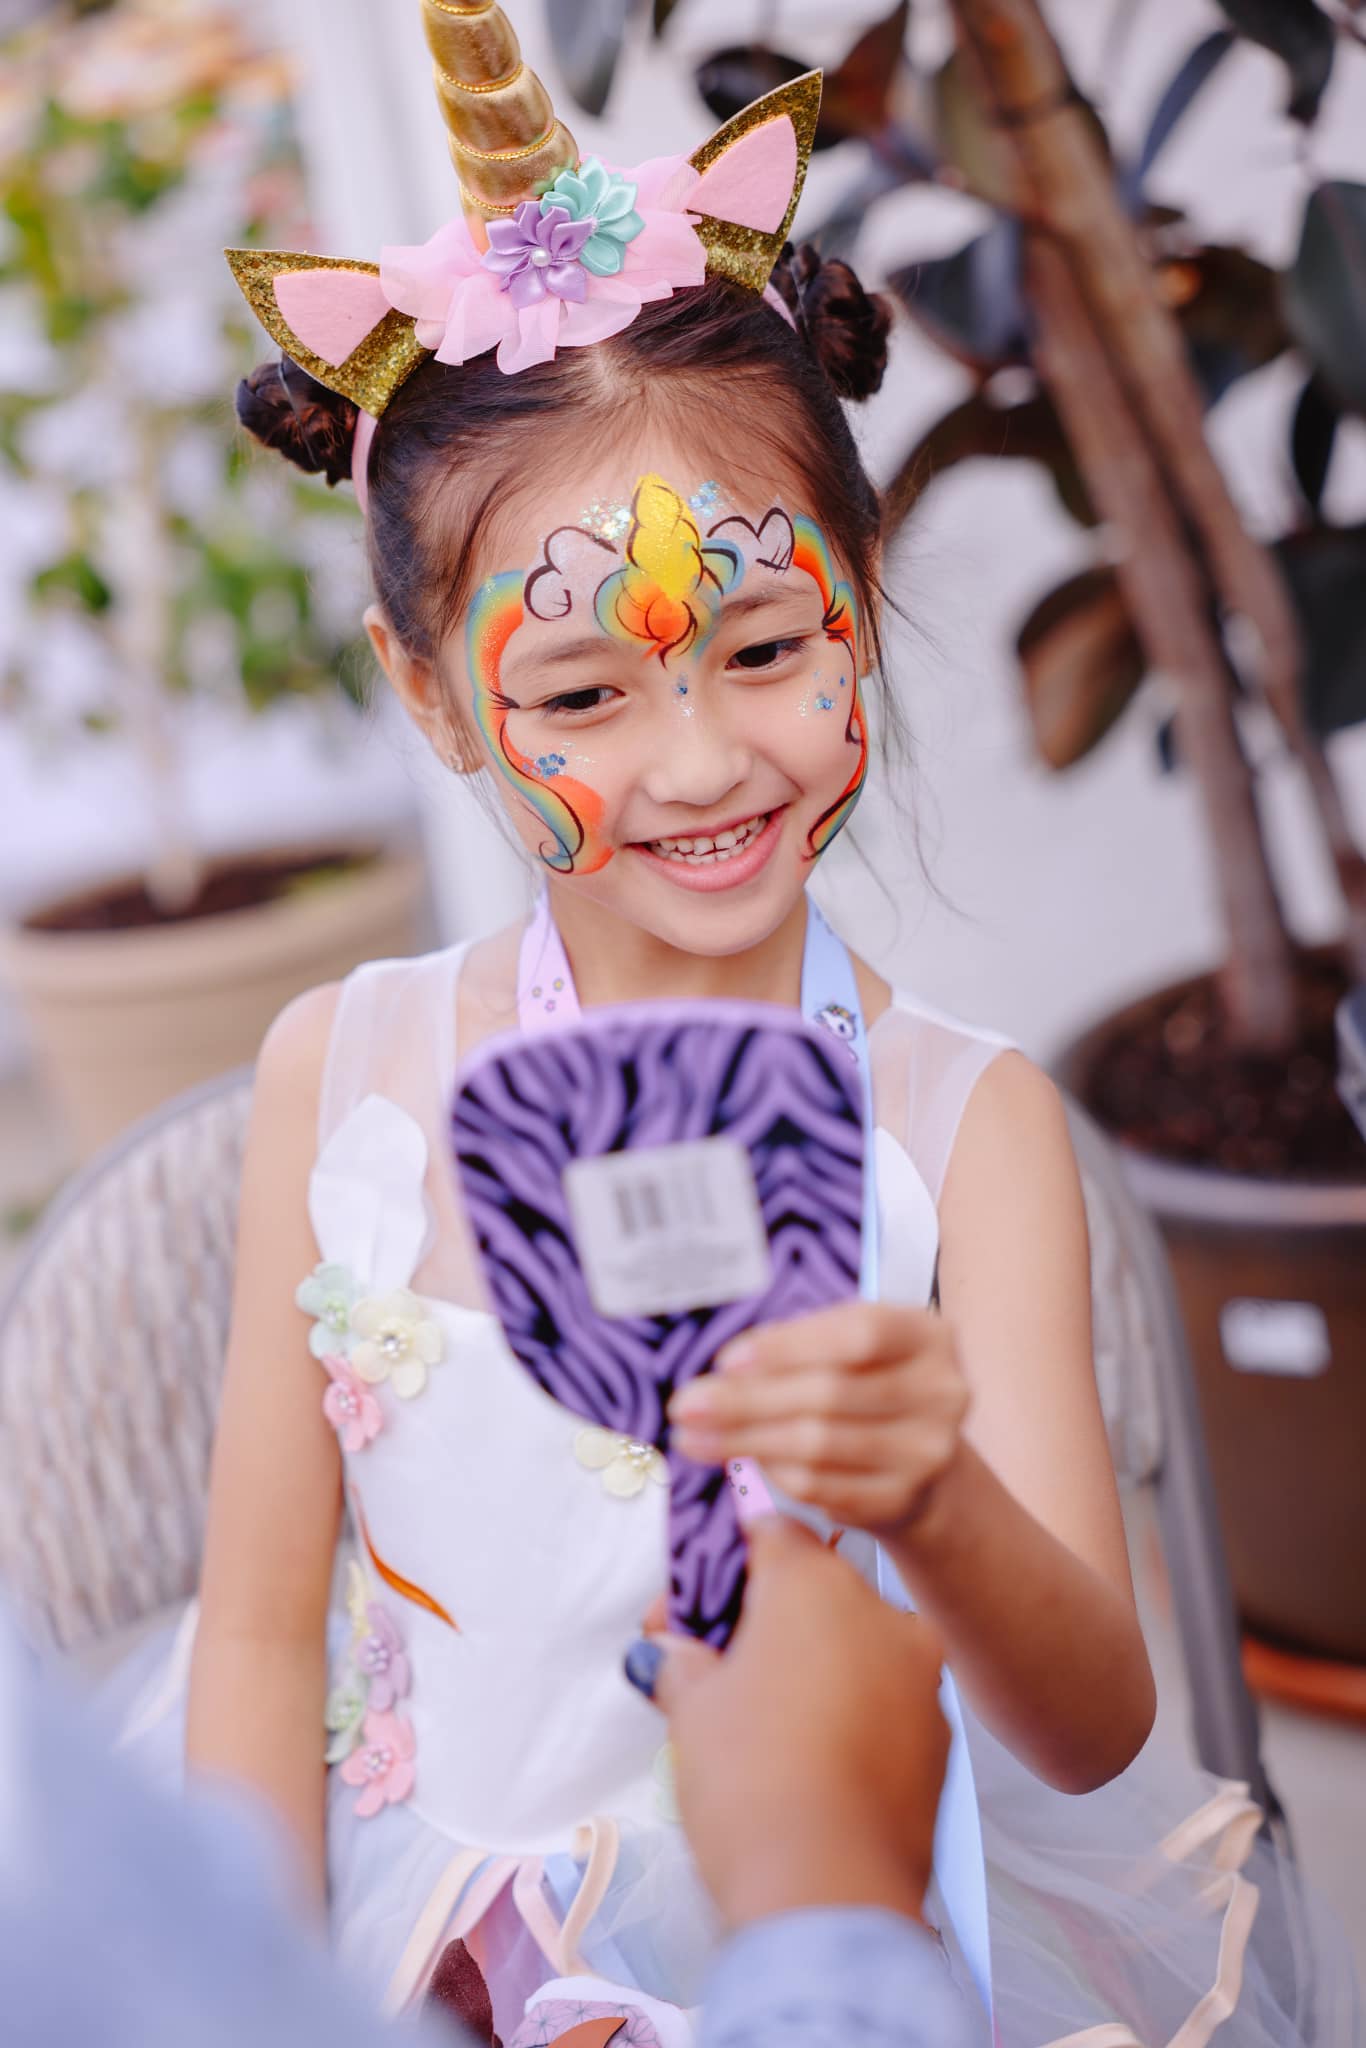 Con gái Hoa hậu Hà Kiều Anh 6 tuổi xinh như công chúa đời thực, sao Việt mê nức nở - 4